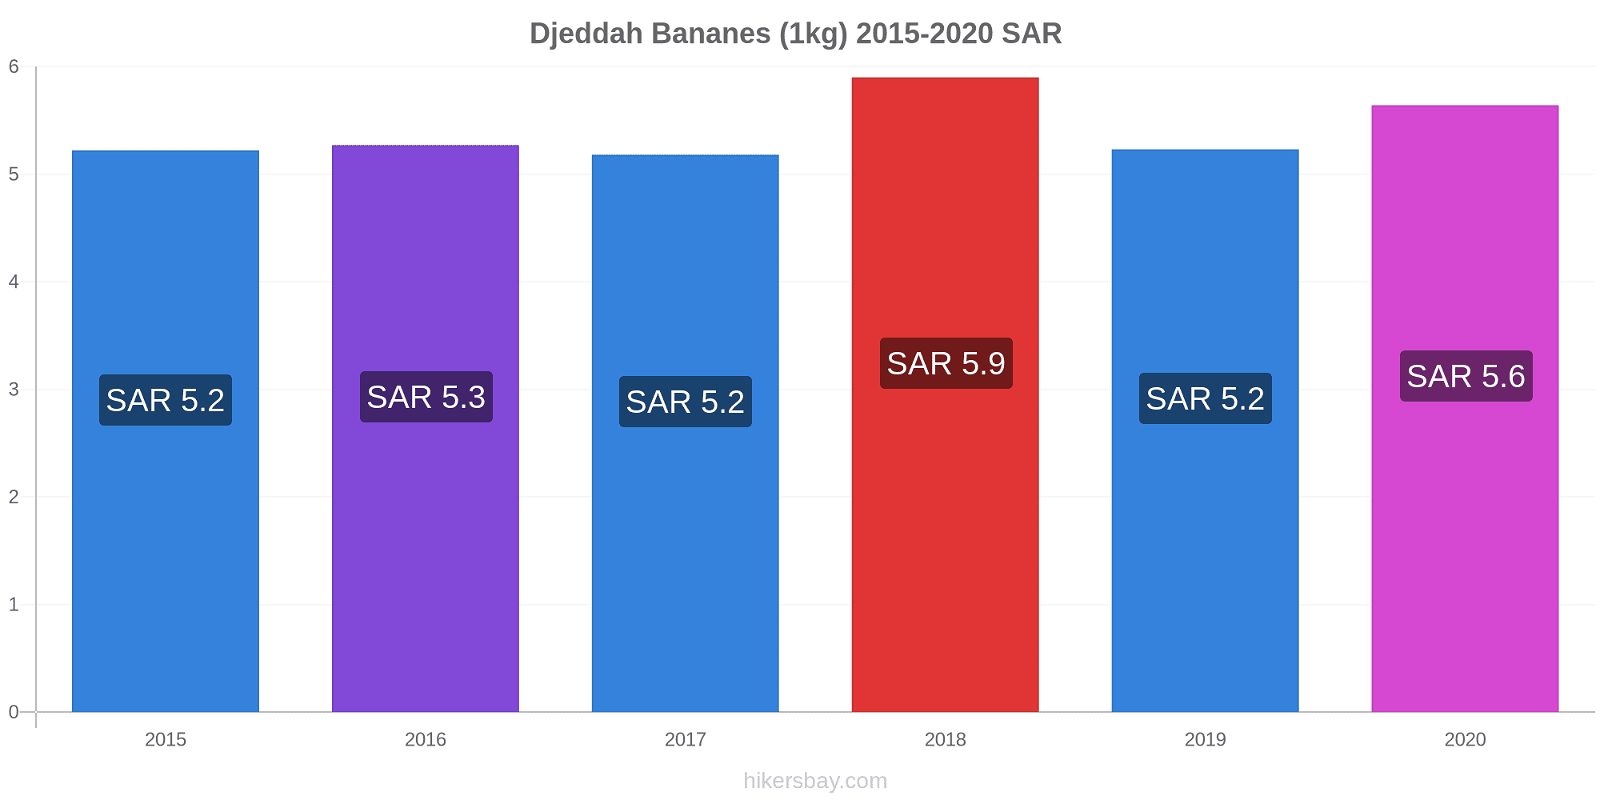 Djeddah changements de prix Bananes (1kg) hikersbay.com